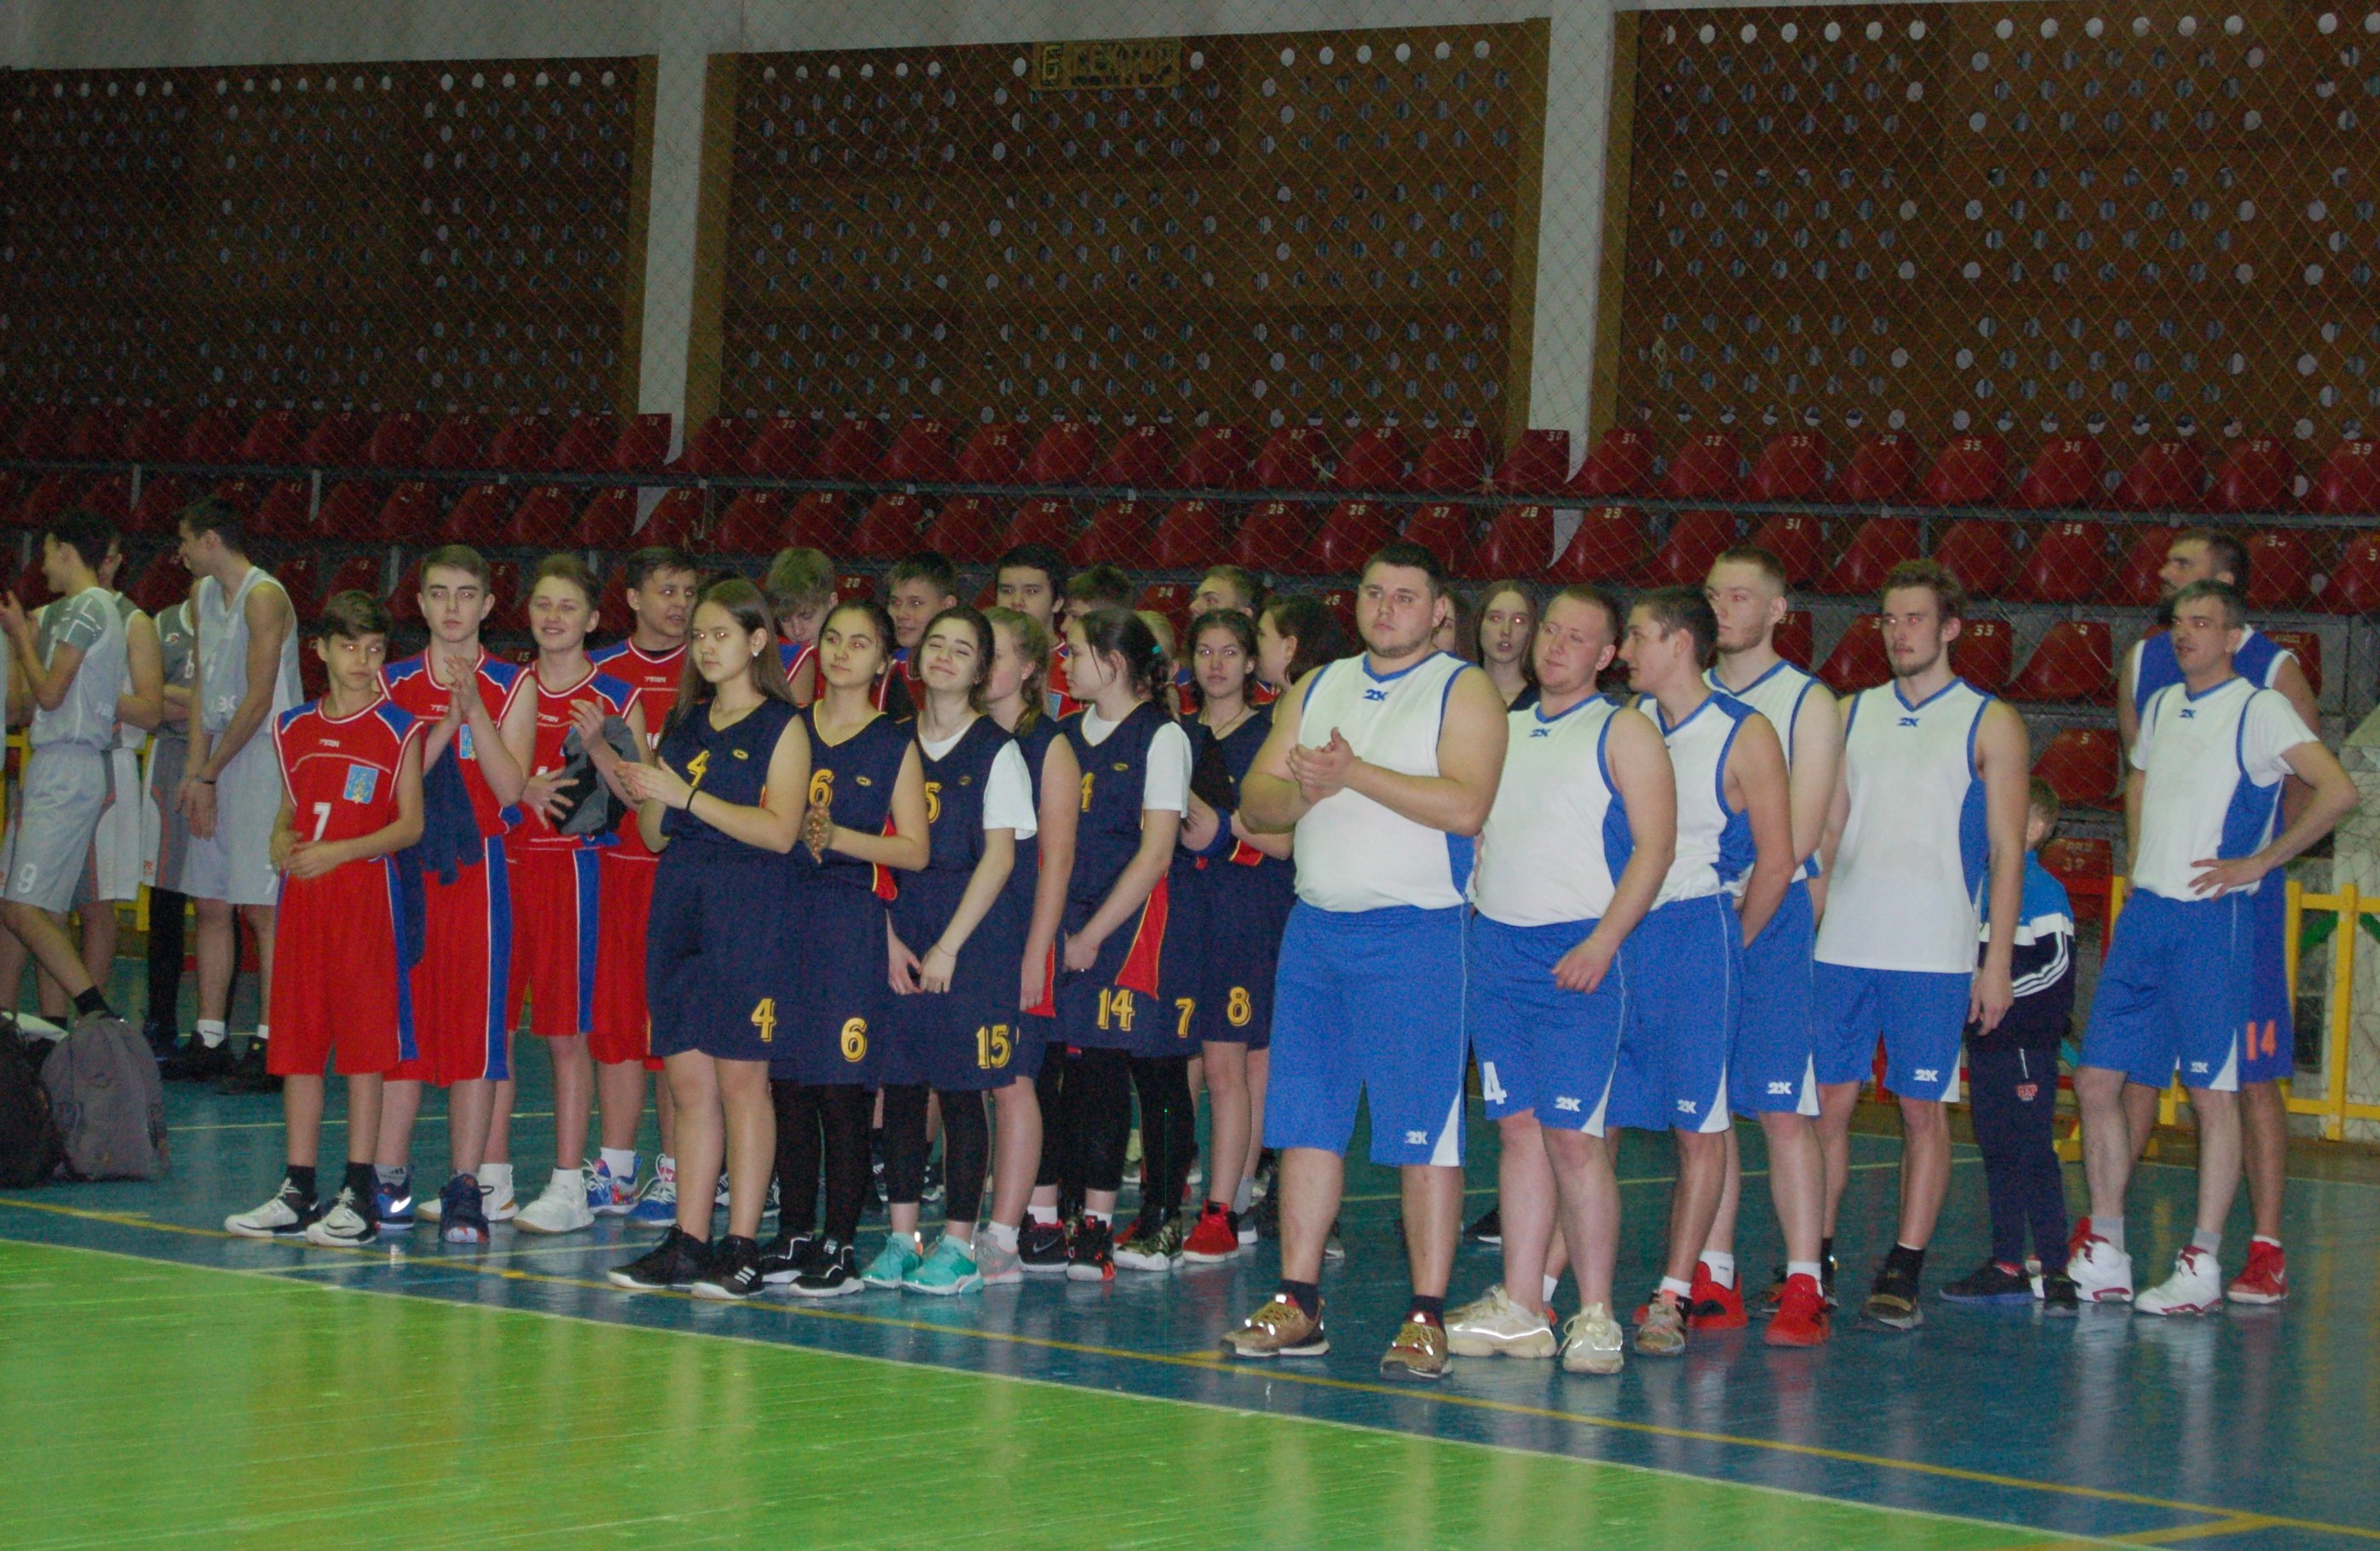 Дальневосточный турнир по баскетболу прошел в Райчихинске / Дальневосточный турнир по баскетболу прошел в городе Райчихинске. Его участниками стали 18 команд —  из Амурской области, Якутии и Еврейской автономной области.